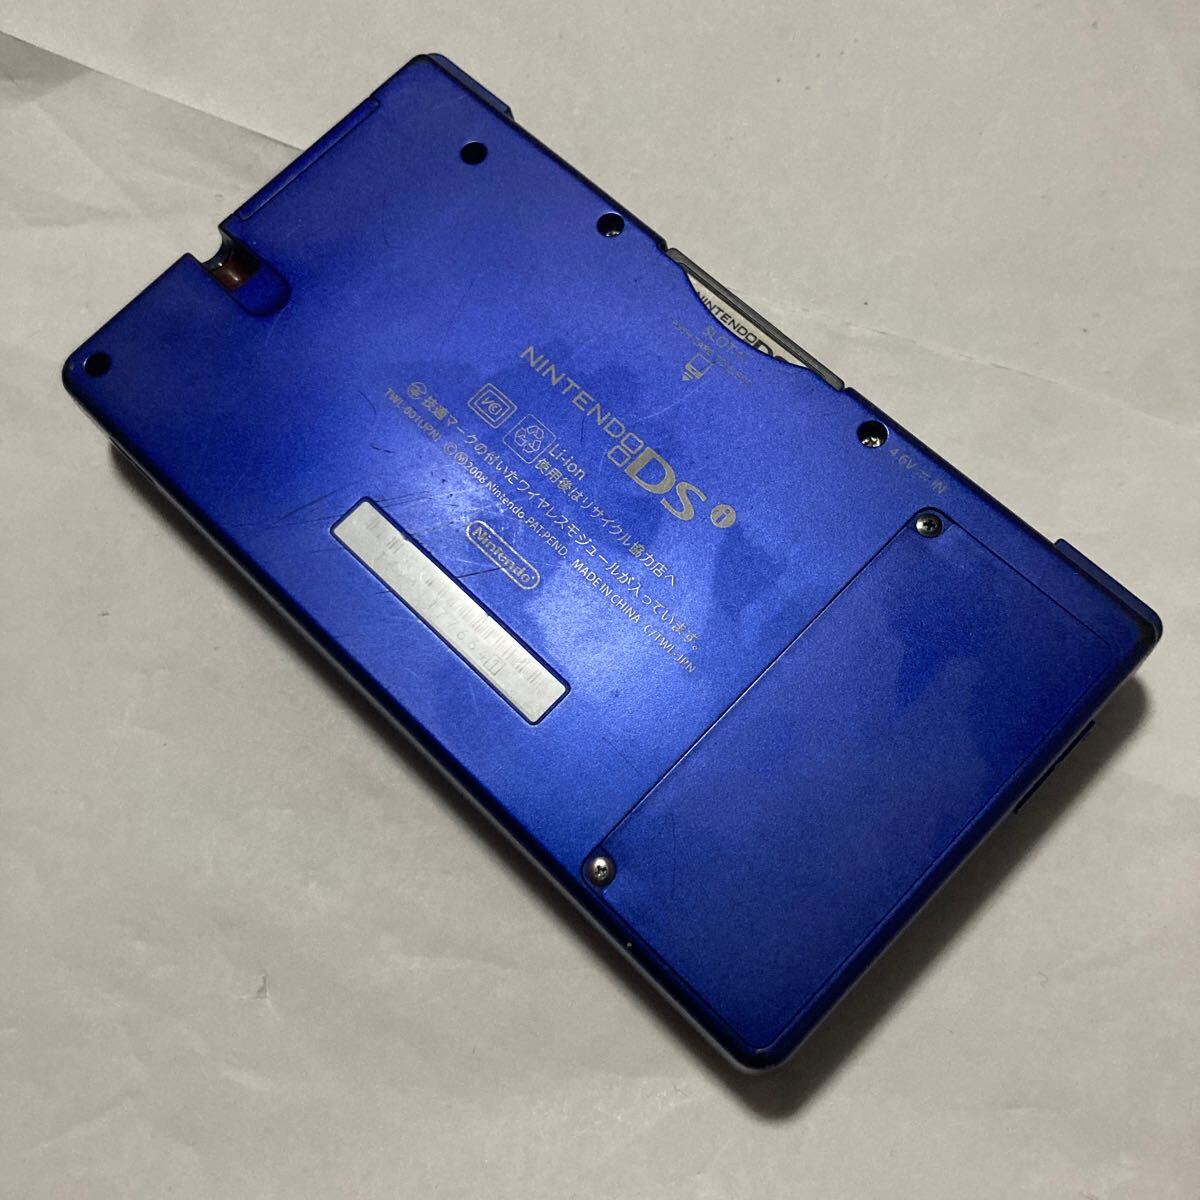 送料無料 Nintendo DSi ブルー TWL-001 ジャンク 本体のみ ニンテンドーDSi 任天堂 ニンテンドー NDS DS i